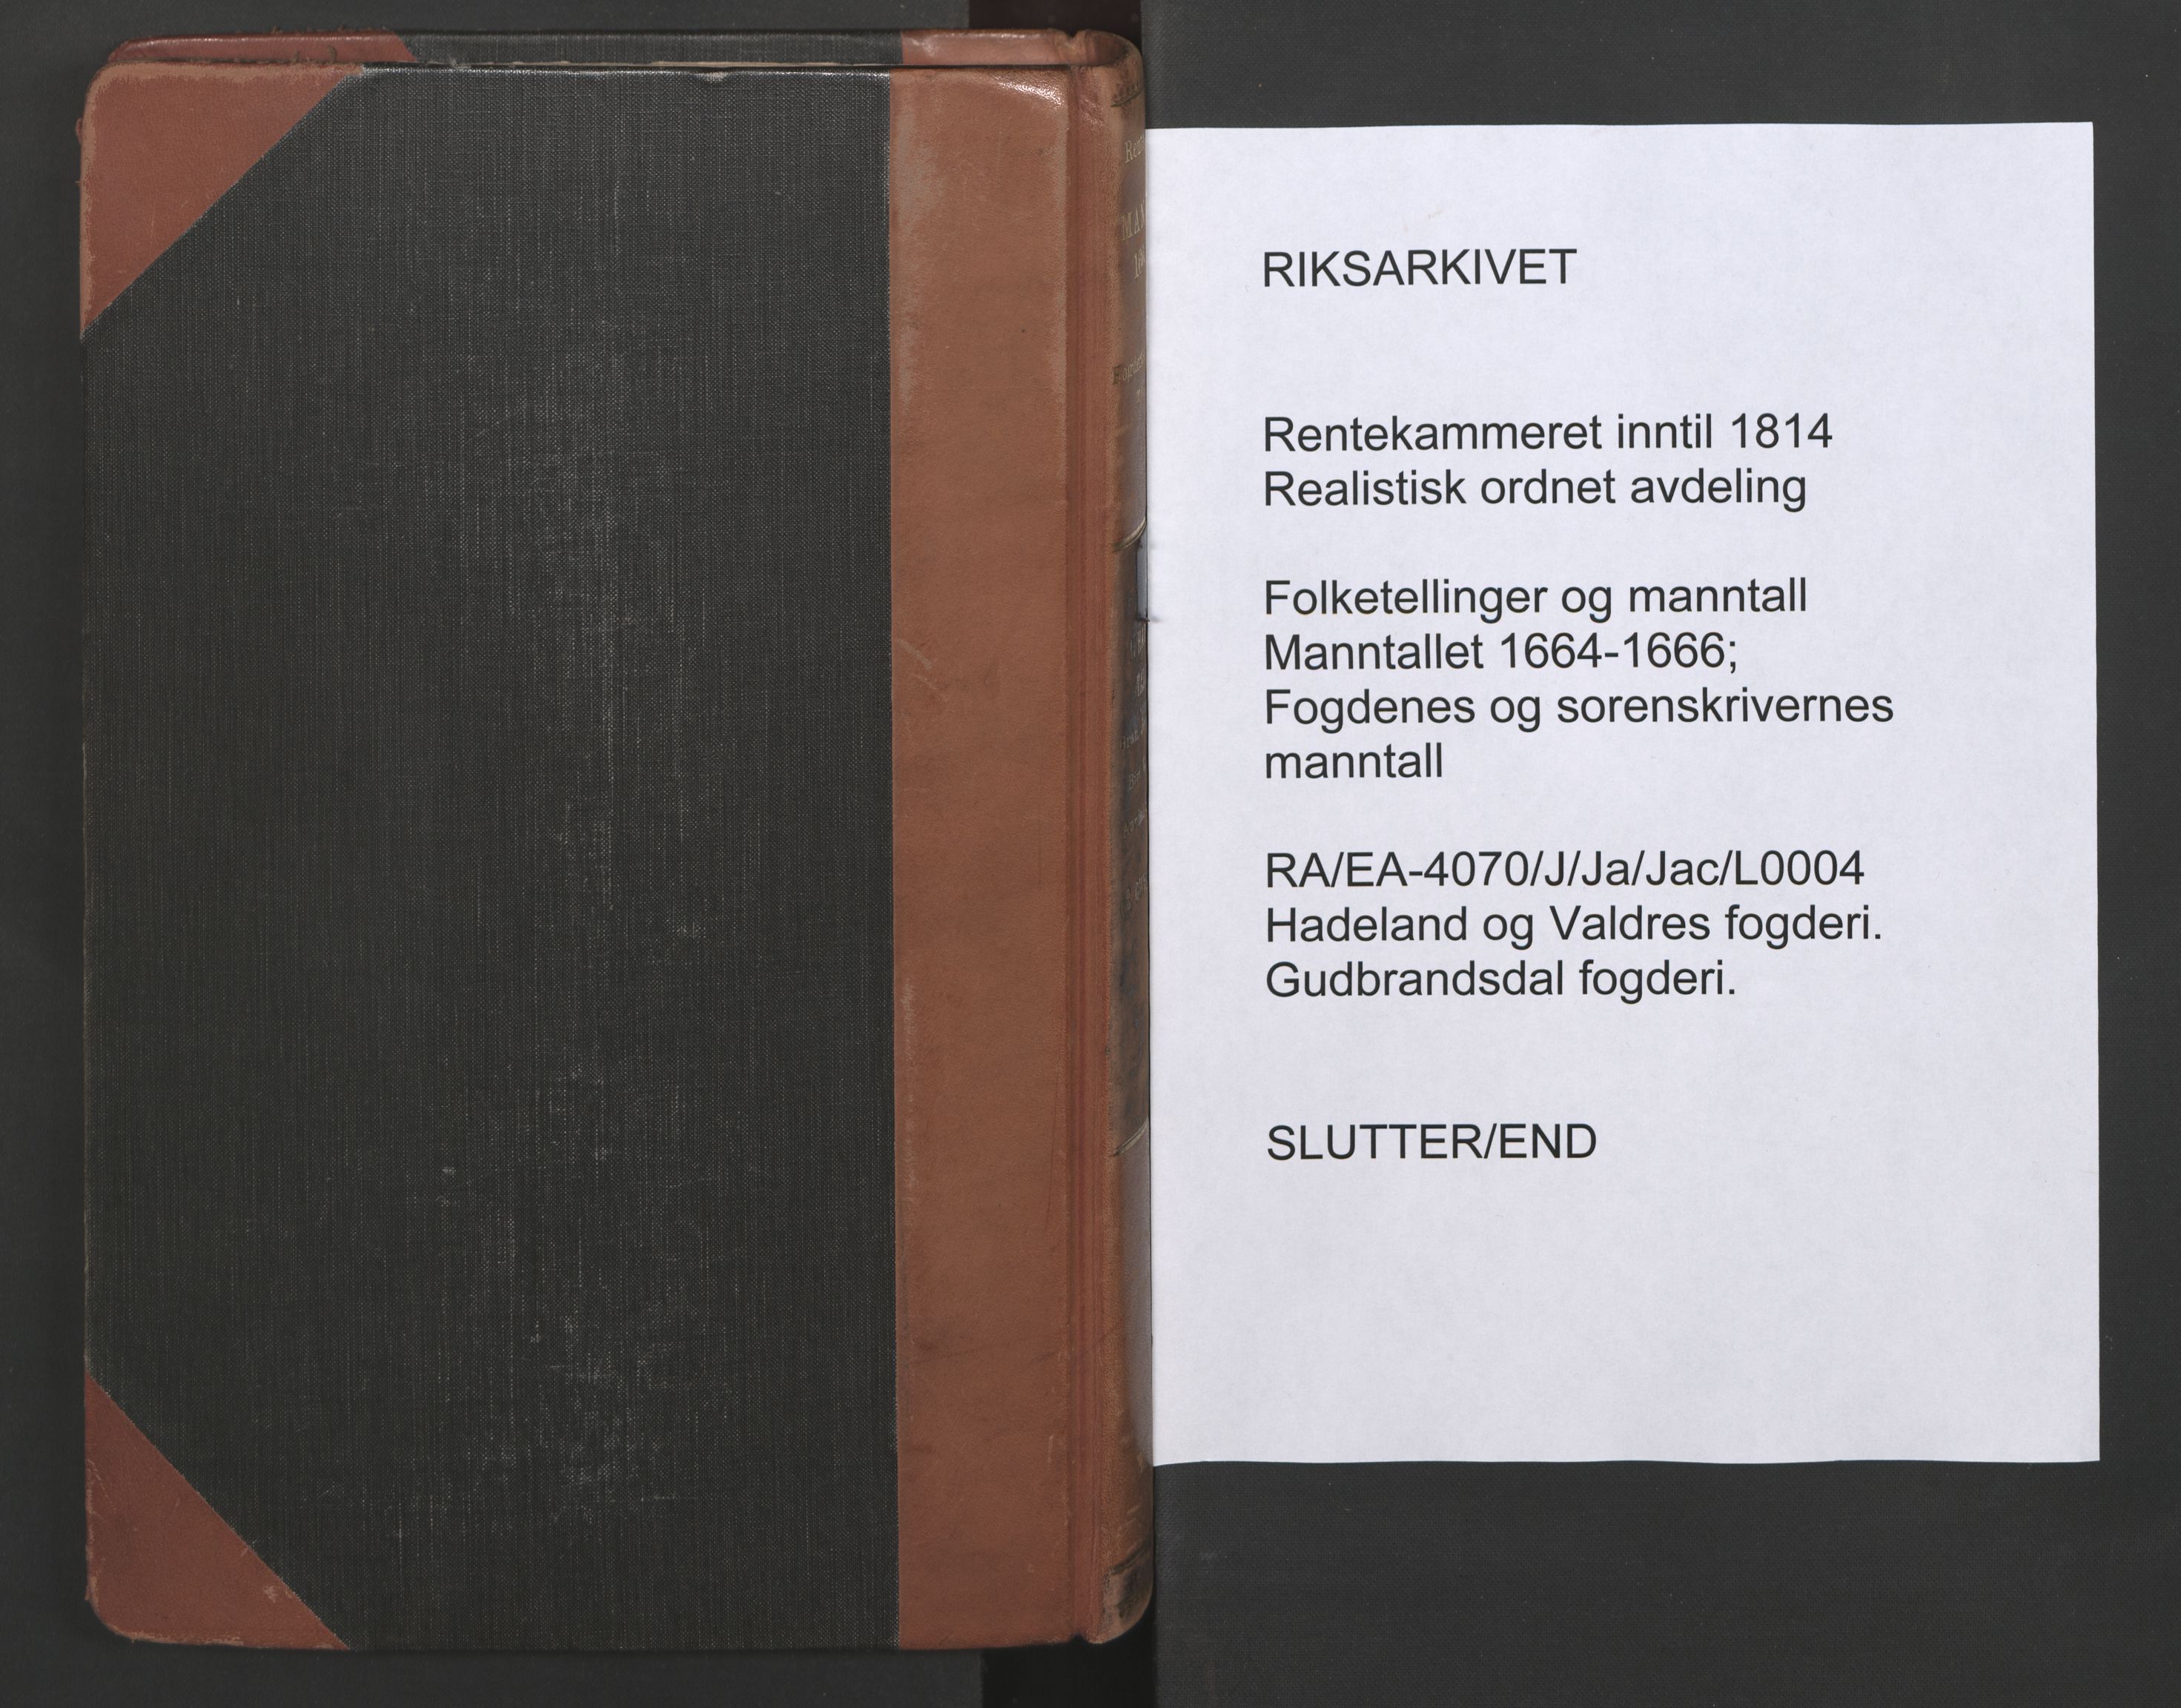 RA, Fogdenes og sorenskrivernes manntall 1664-1666, nr. 4: Hadeland og Valdres fogderi og Gudbrandsdal fogderi, 1664